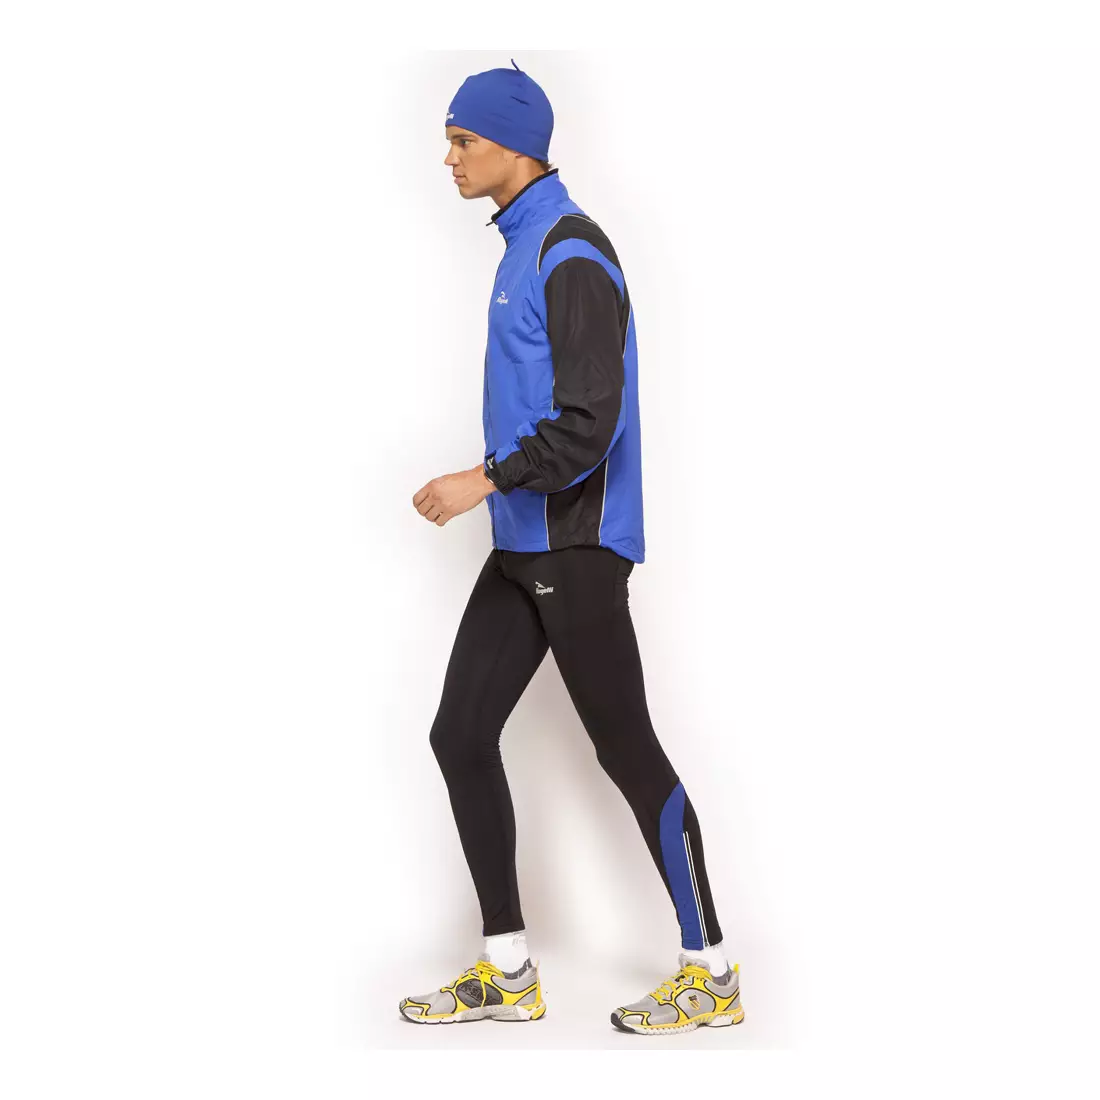 ROGELLI DUNBAR - pánske zateplené joggingové nohavice